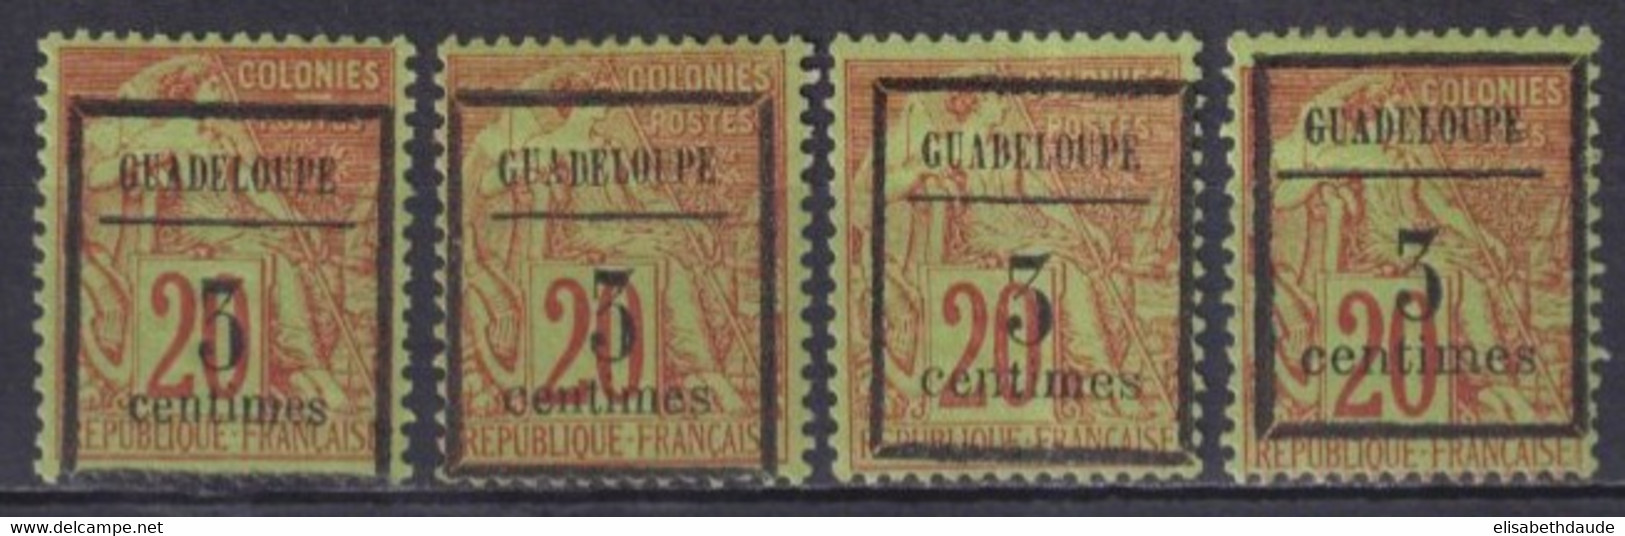 GUADELOUPE - 1889 - YVERT N° 3 TYPES I+II+III+V  * MH - COTE = 81 EUR. - - Neufs